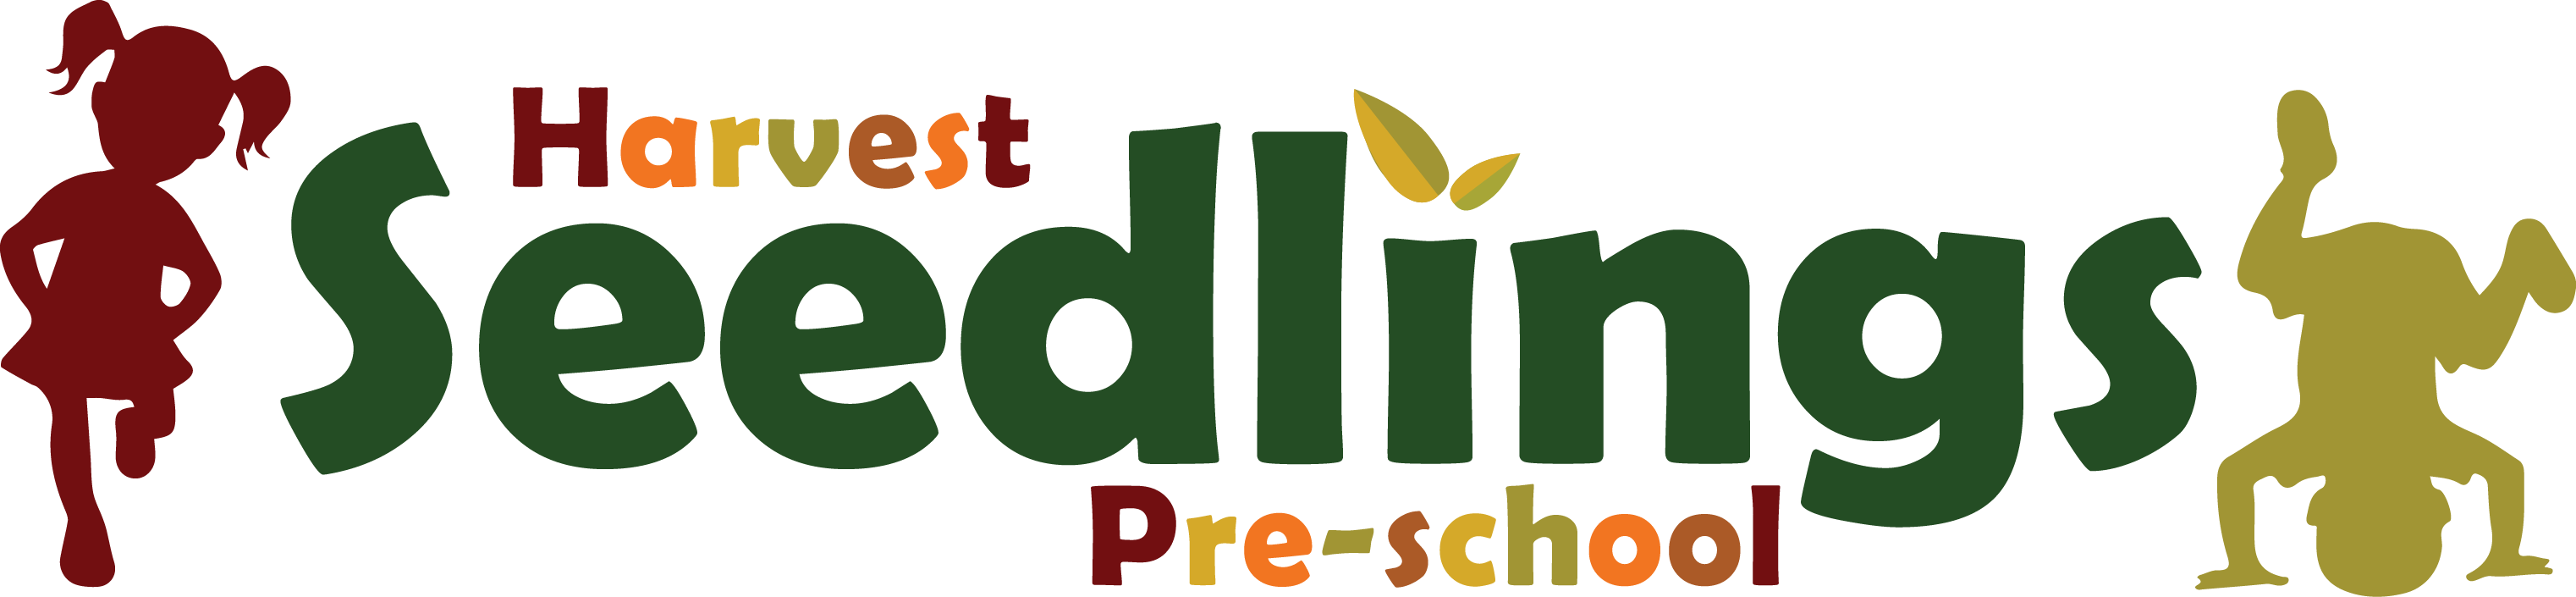 Harvest Seedlings Logo